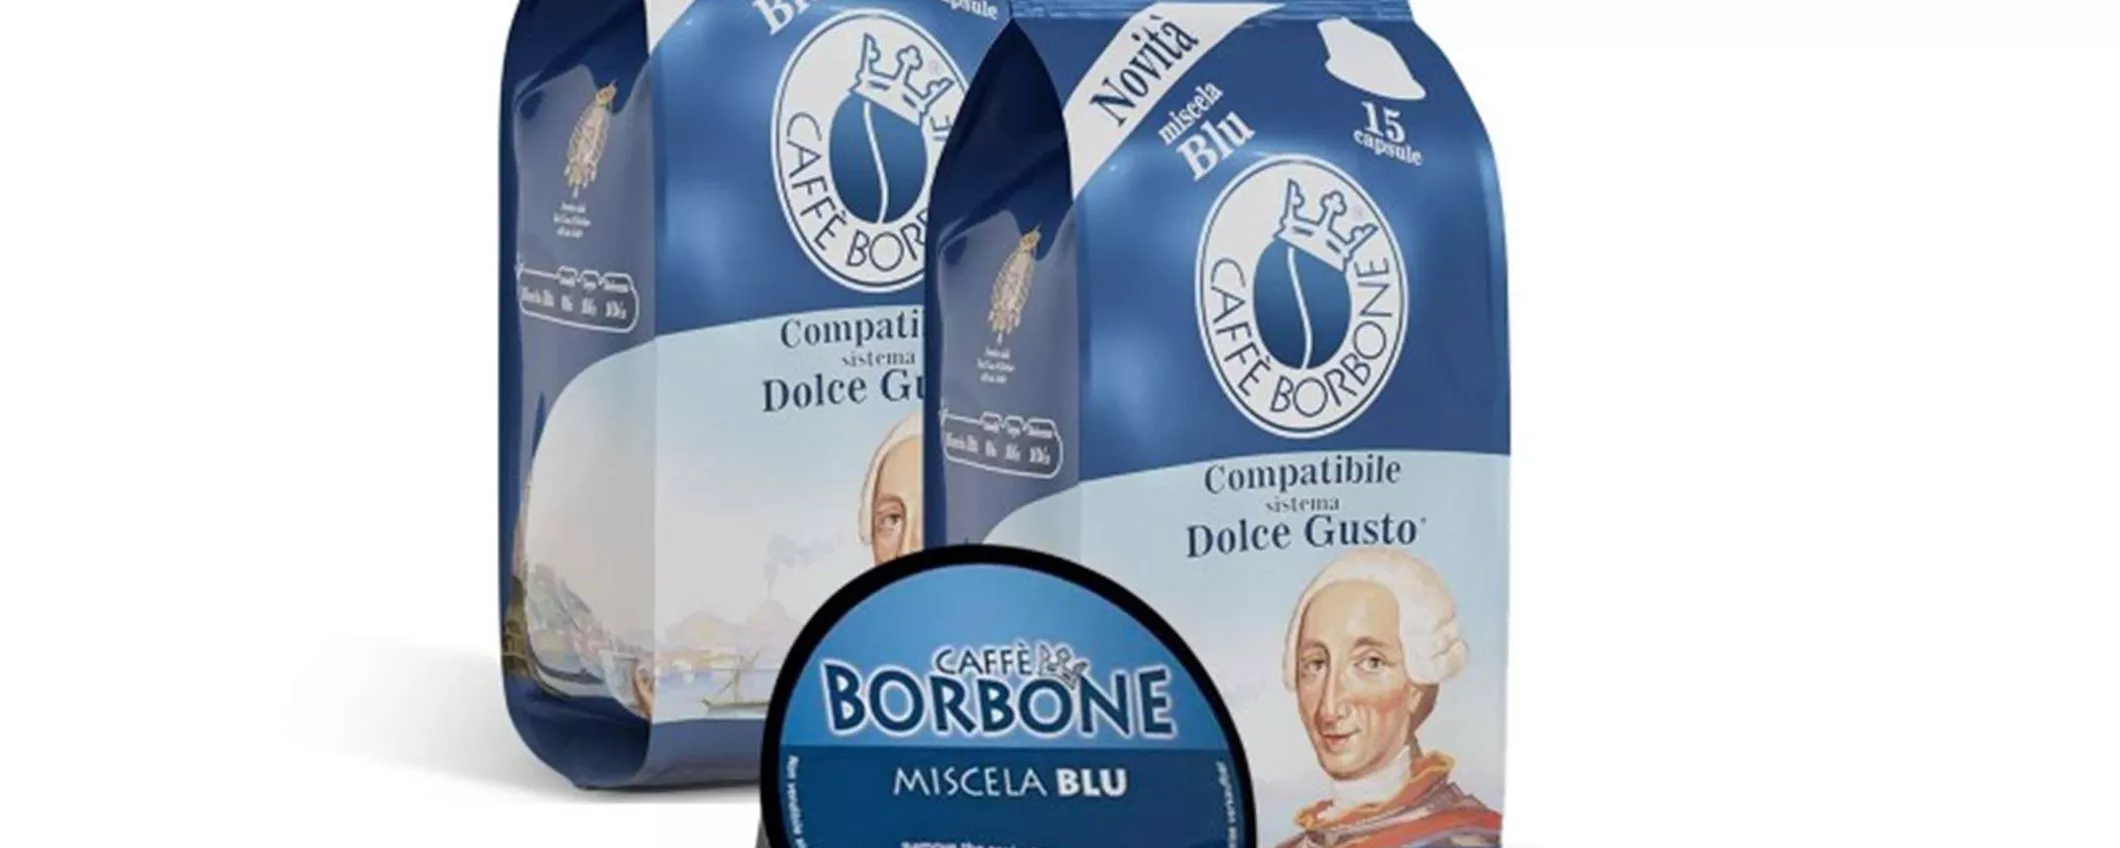 180 capsule caffè Borbone miscela Blu per Nescafé a soli 34€? FOLLIE di eBay!